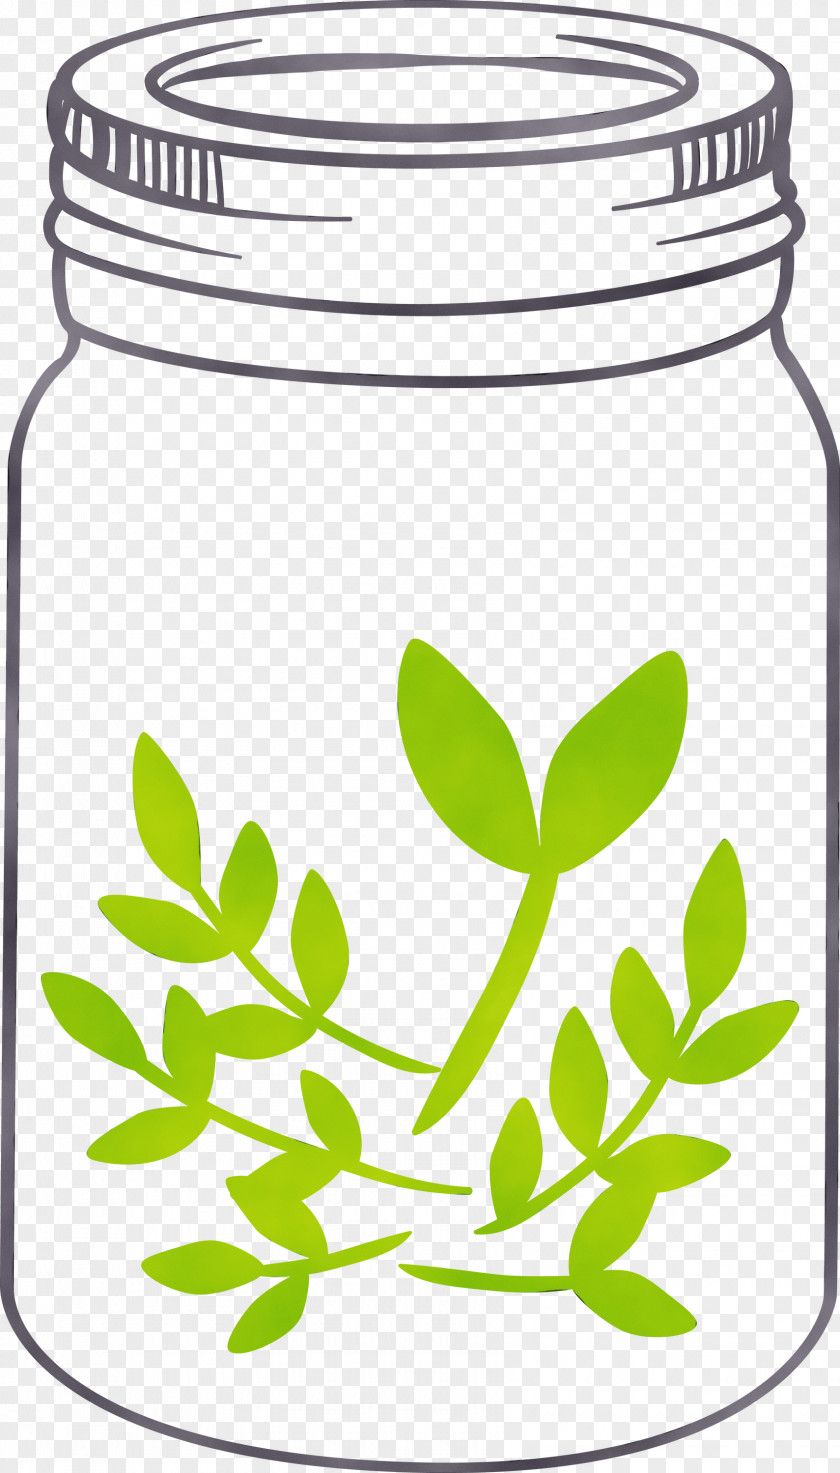 Food Storage Containers Leaf Herbal Medicine Herb Tree PNG